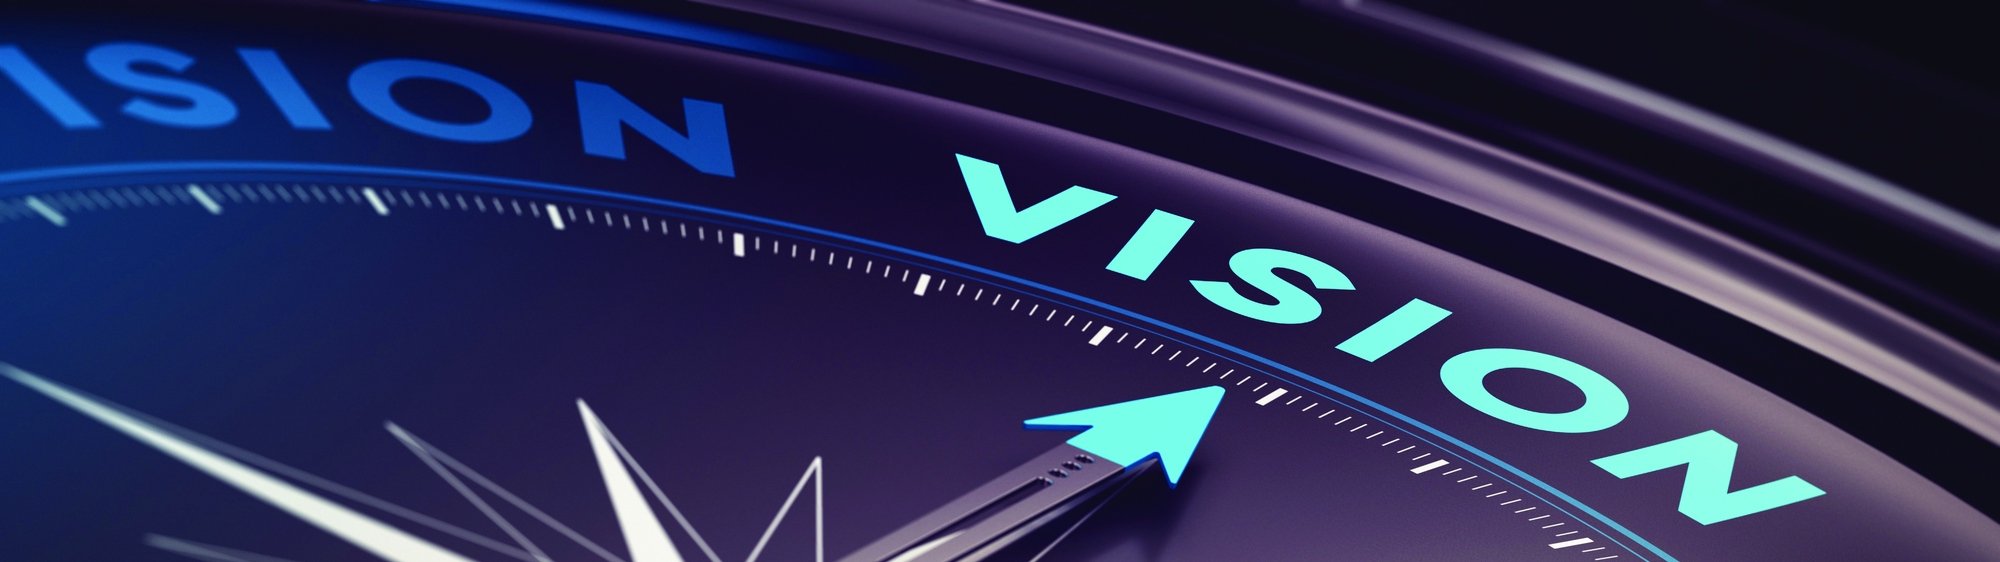 Mission - Vision - Core Values